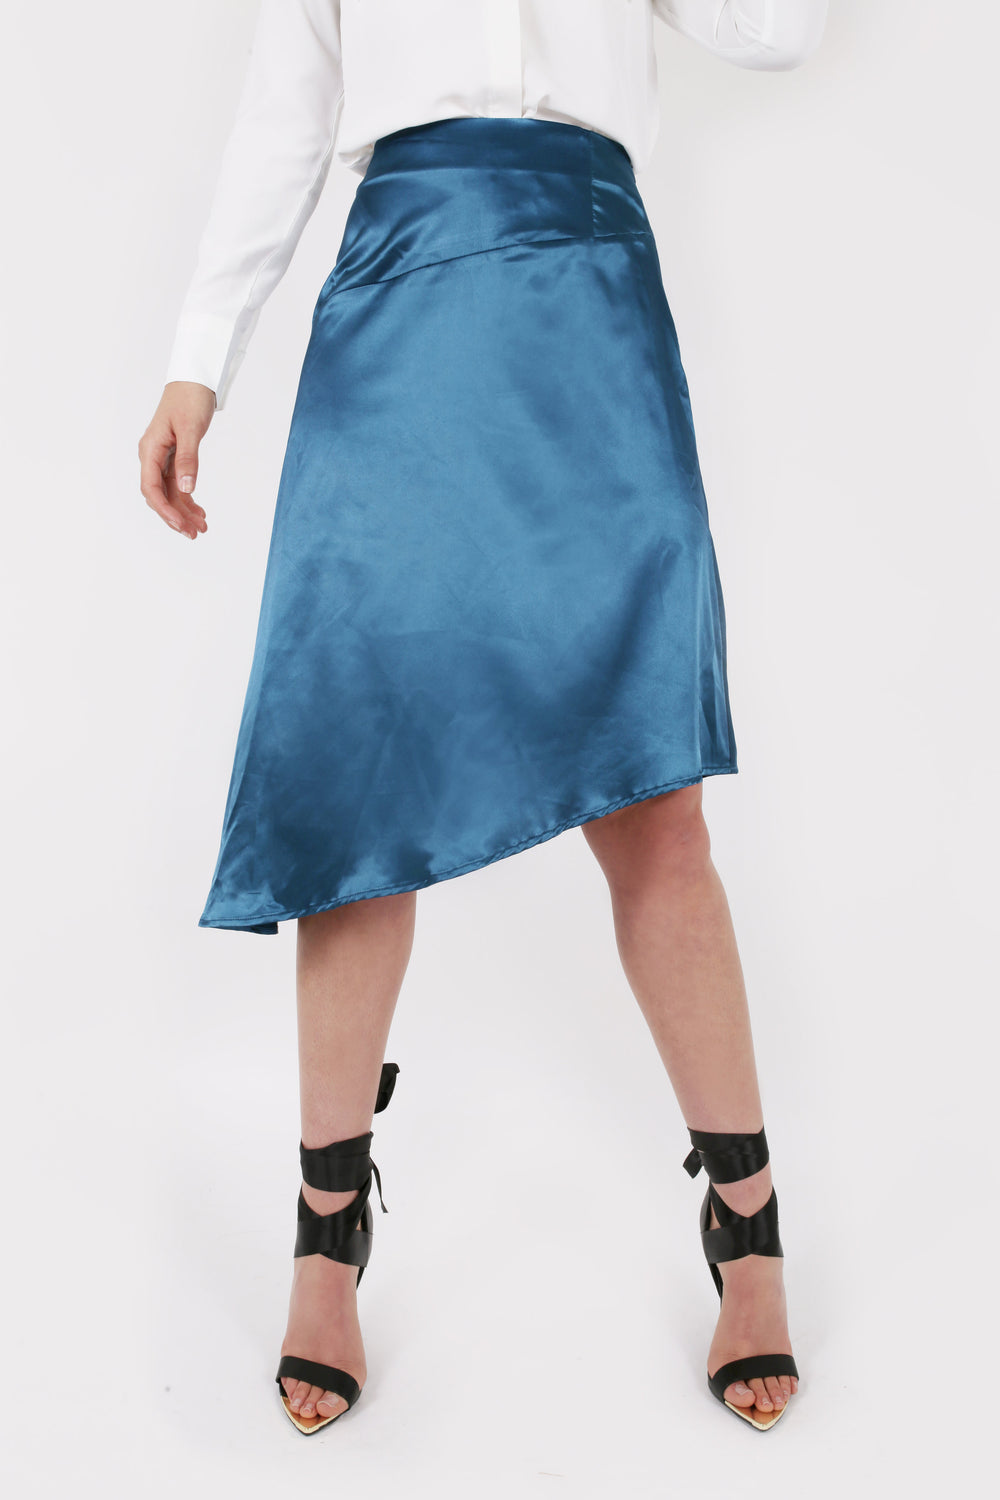 Modest Satin Asymmetric Skirt in Midi Length 